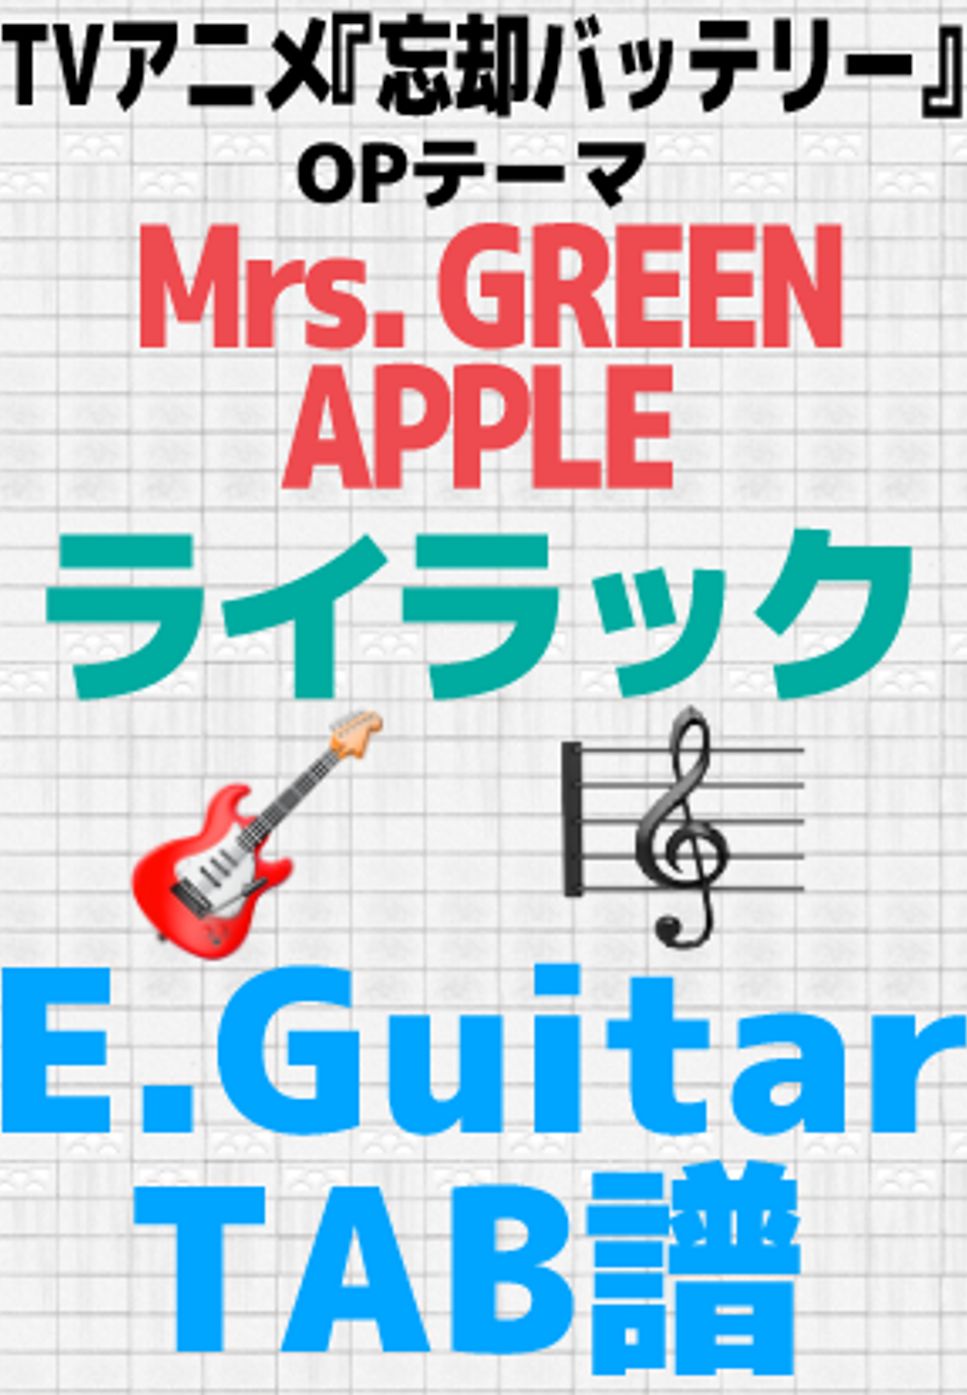 Mrs. GREEN APPLE - 【🎸TABS】 Lilac (Mrs. GREEN APPLE)- Oblivion Battery OP FULL | Guitar TABS by GakuChannel